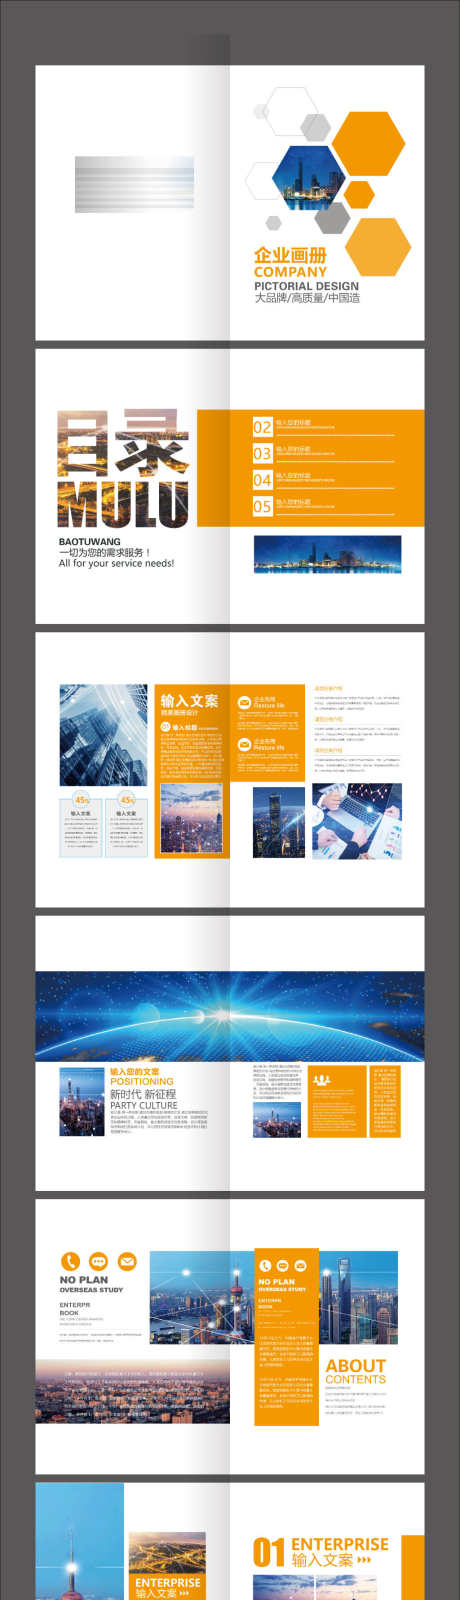 橙色企业项目营销宣传画册_源文件下载_AI格式_2126X11087像素-版式,图片,杂志,画册,科技,企业-作品编号:2024010409388646-志设-zs9.com